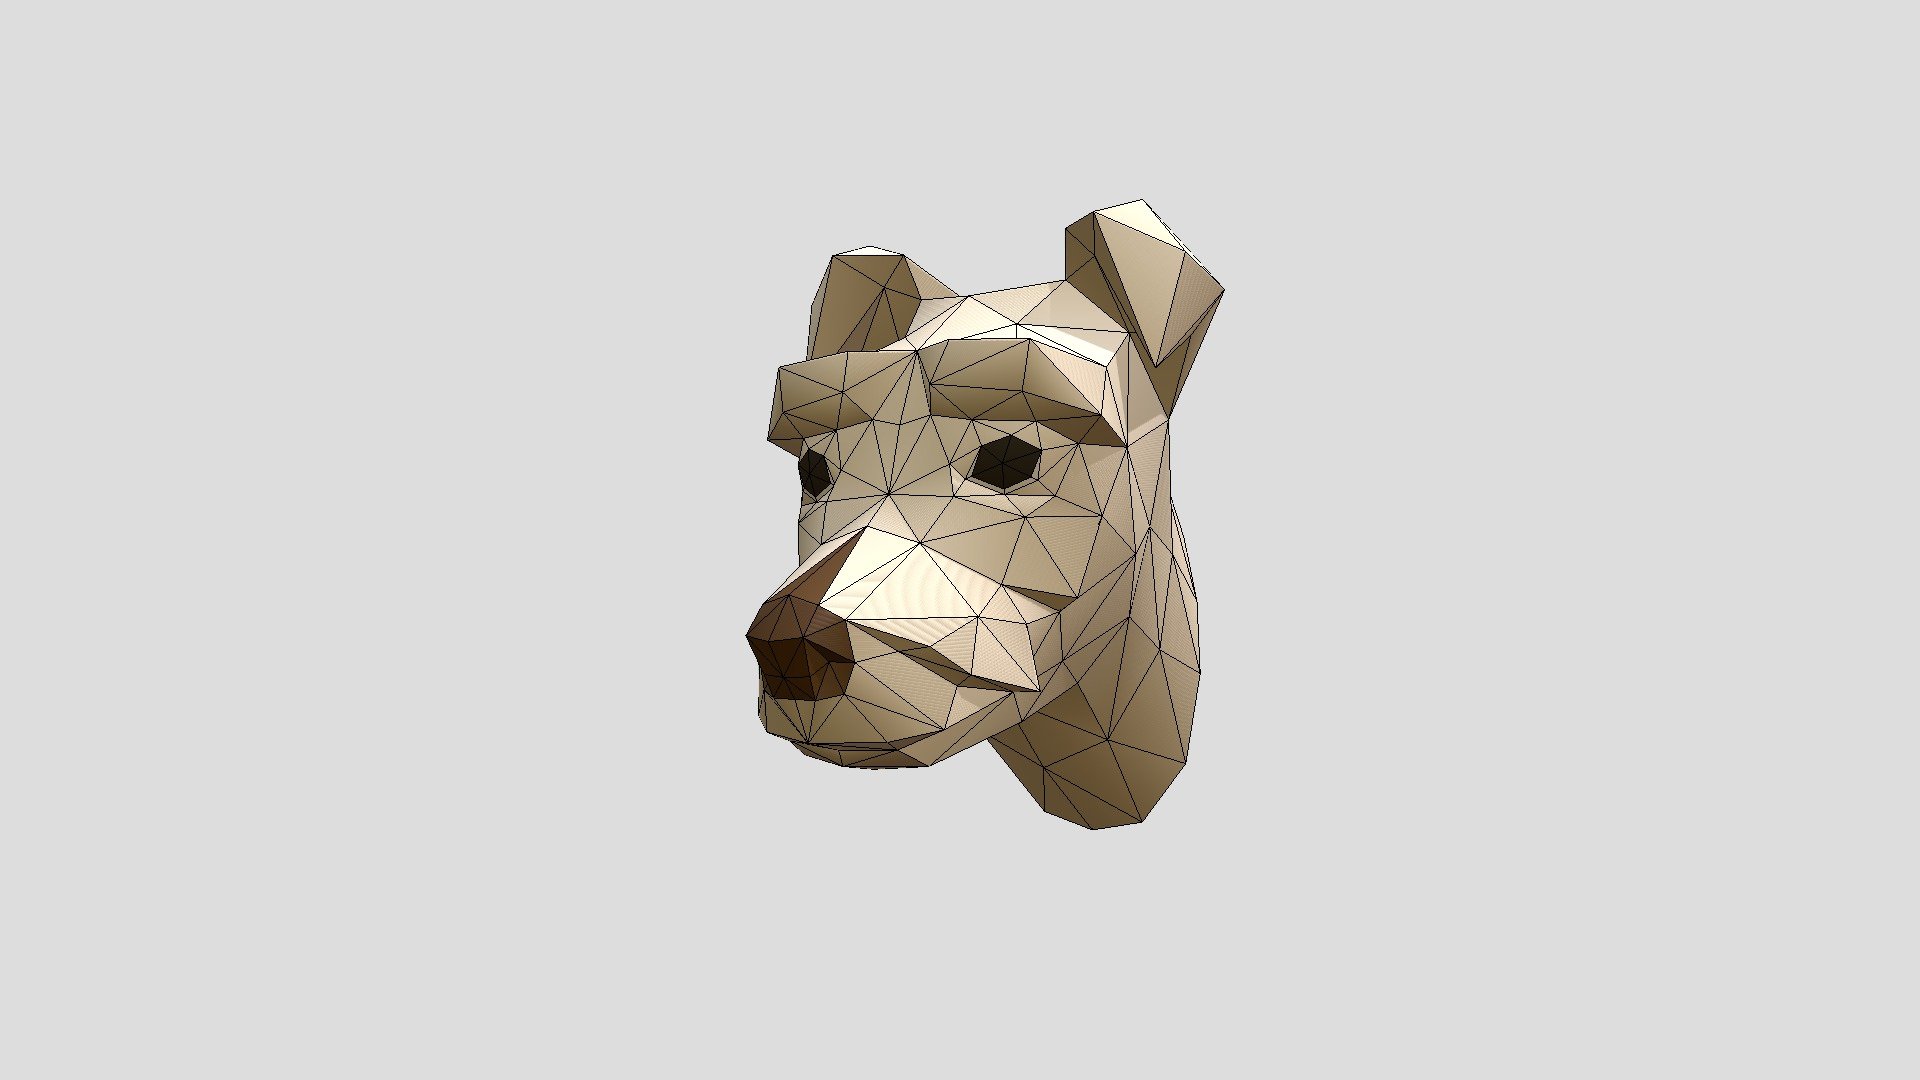 Cabeza de perro estilo trofeo modelo lowpoly.
 Recomedado para pepakura , impresón 3D - Dog Mixto - 3D model by vanneyepes6 3d model